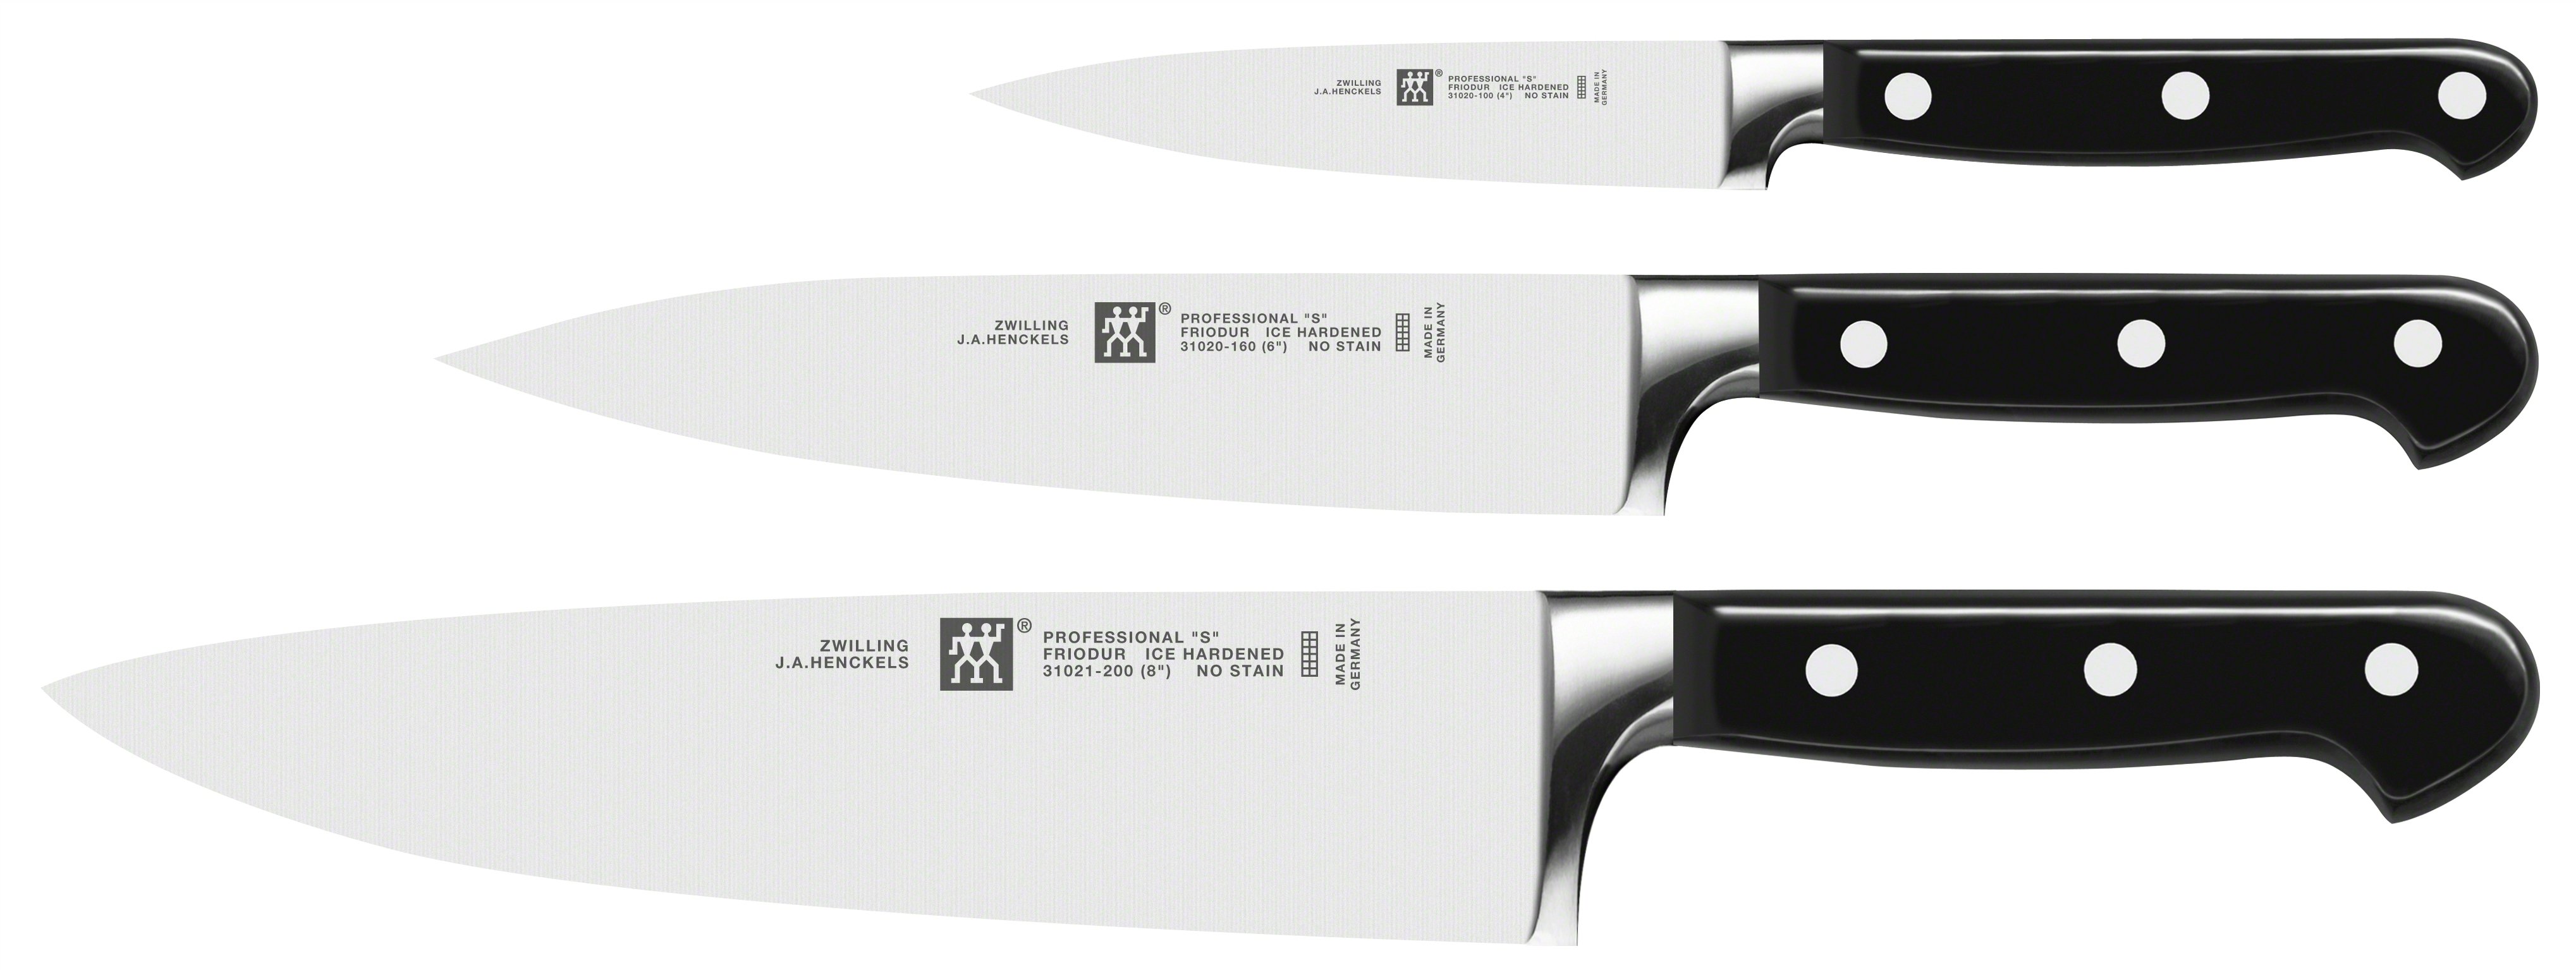 Zwilling Professional “S" sada nožov - 3 ks 35602-000